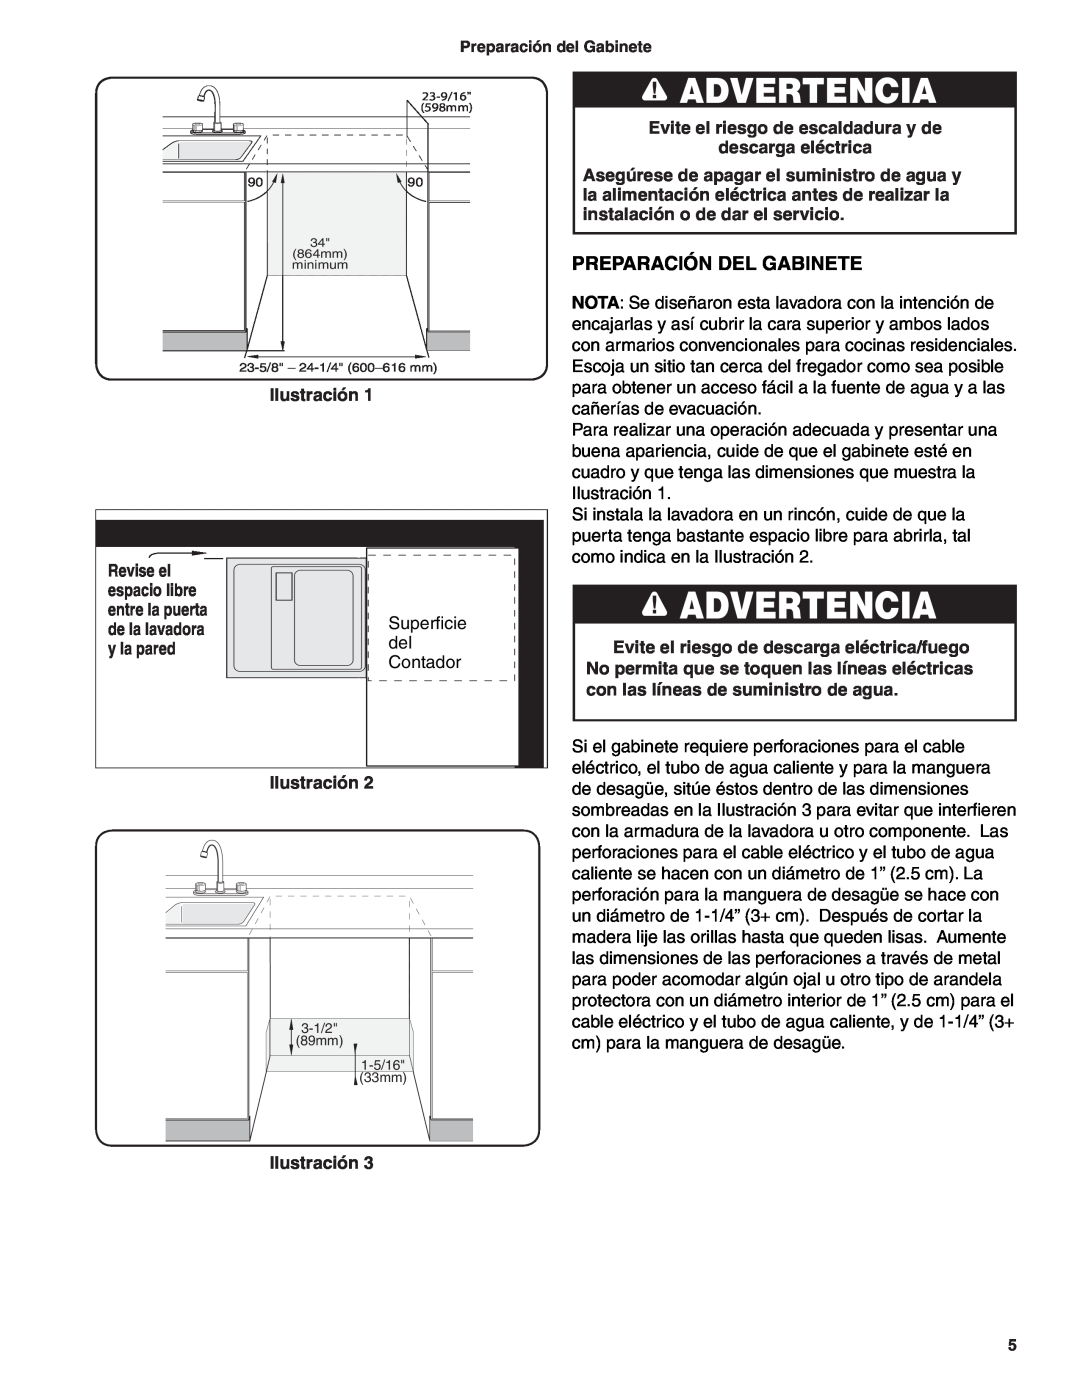 Bosch Appliances BSH Dishwasher important safety instructions Advertencia, Preparación Del Gabinete 